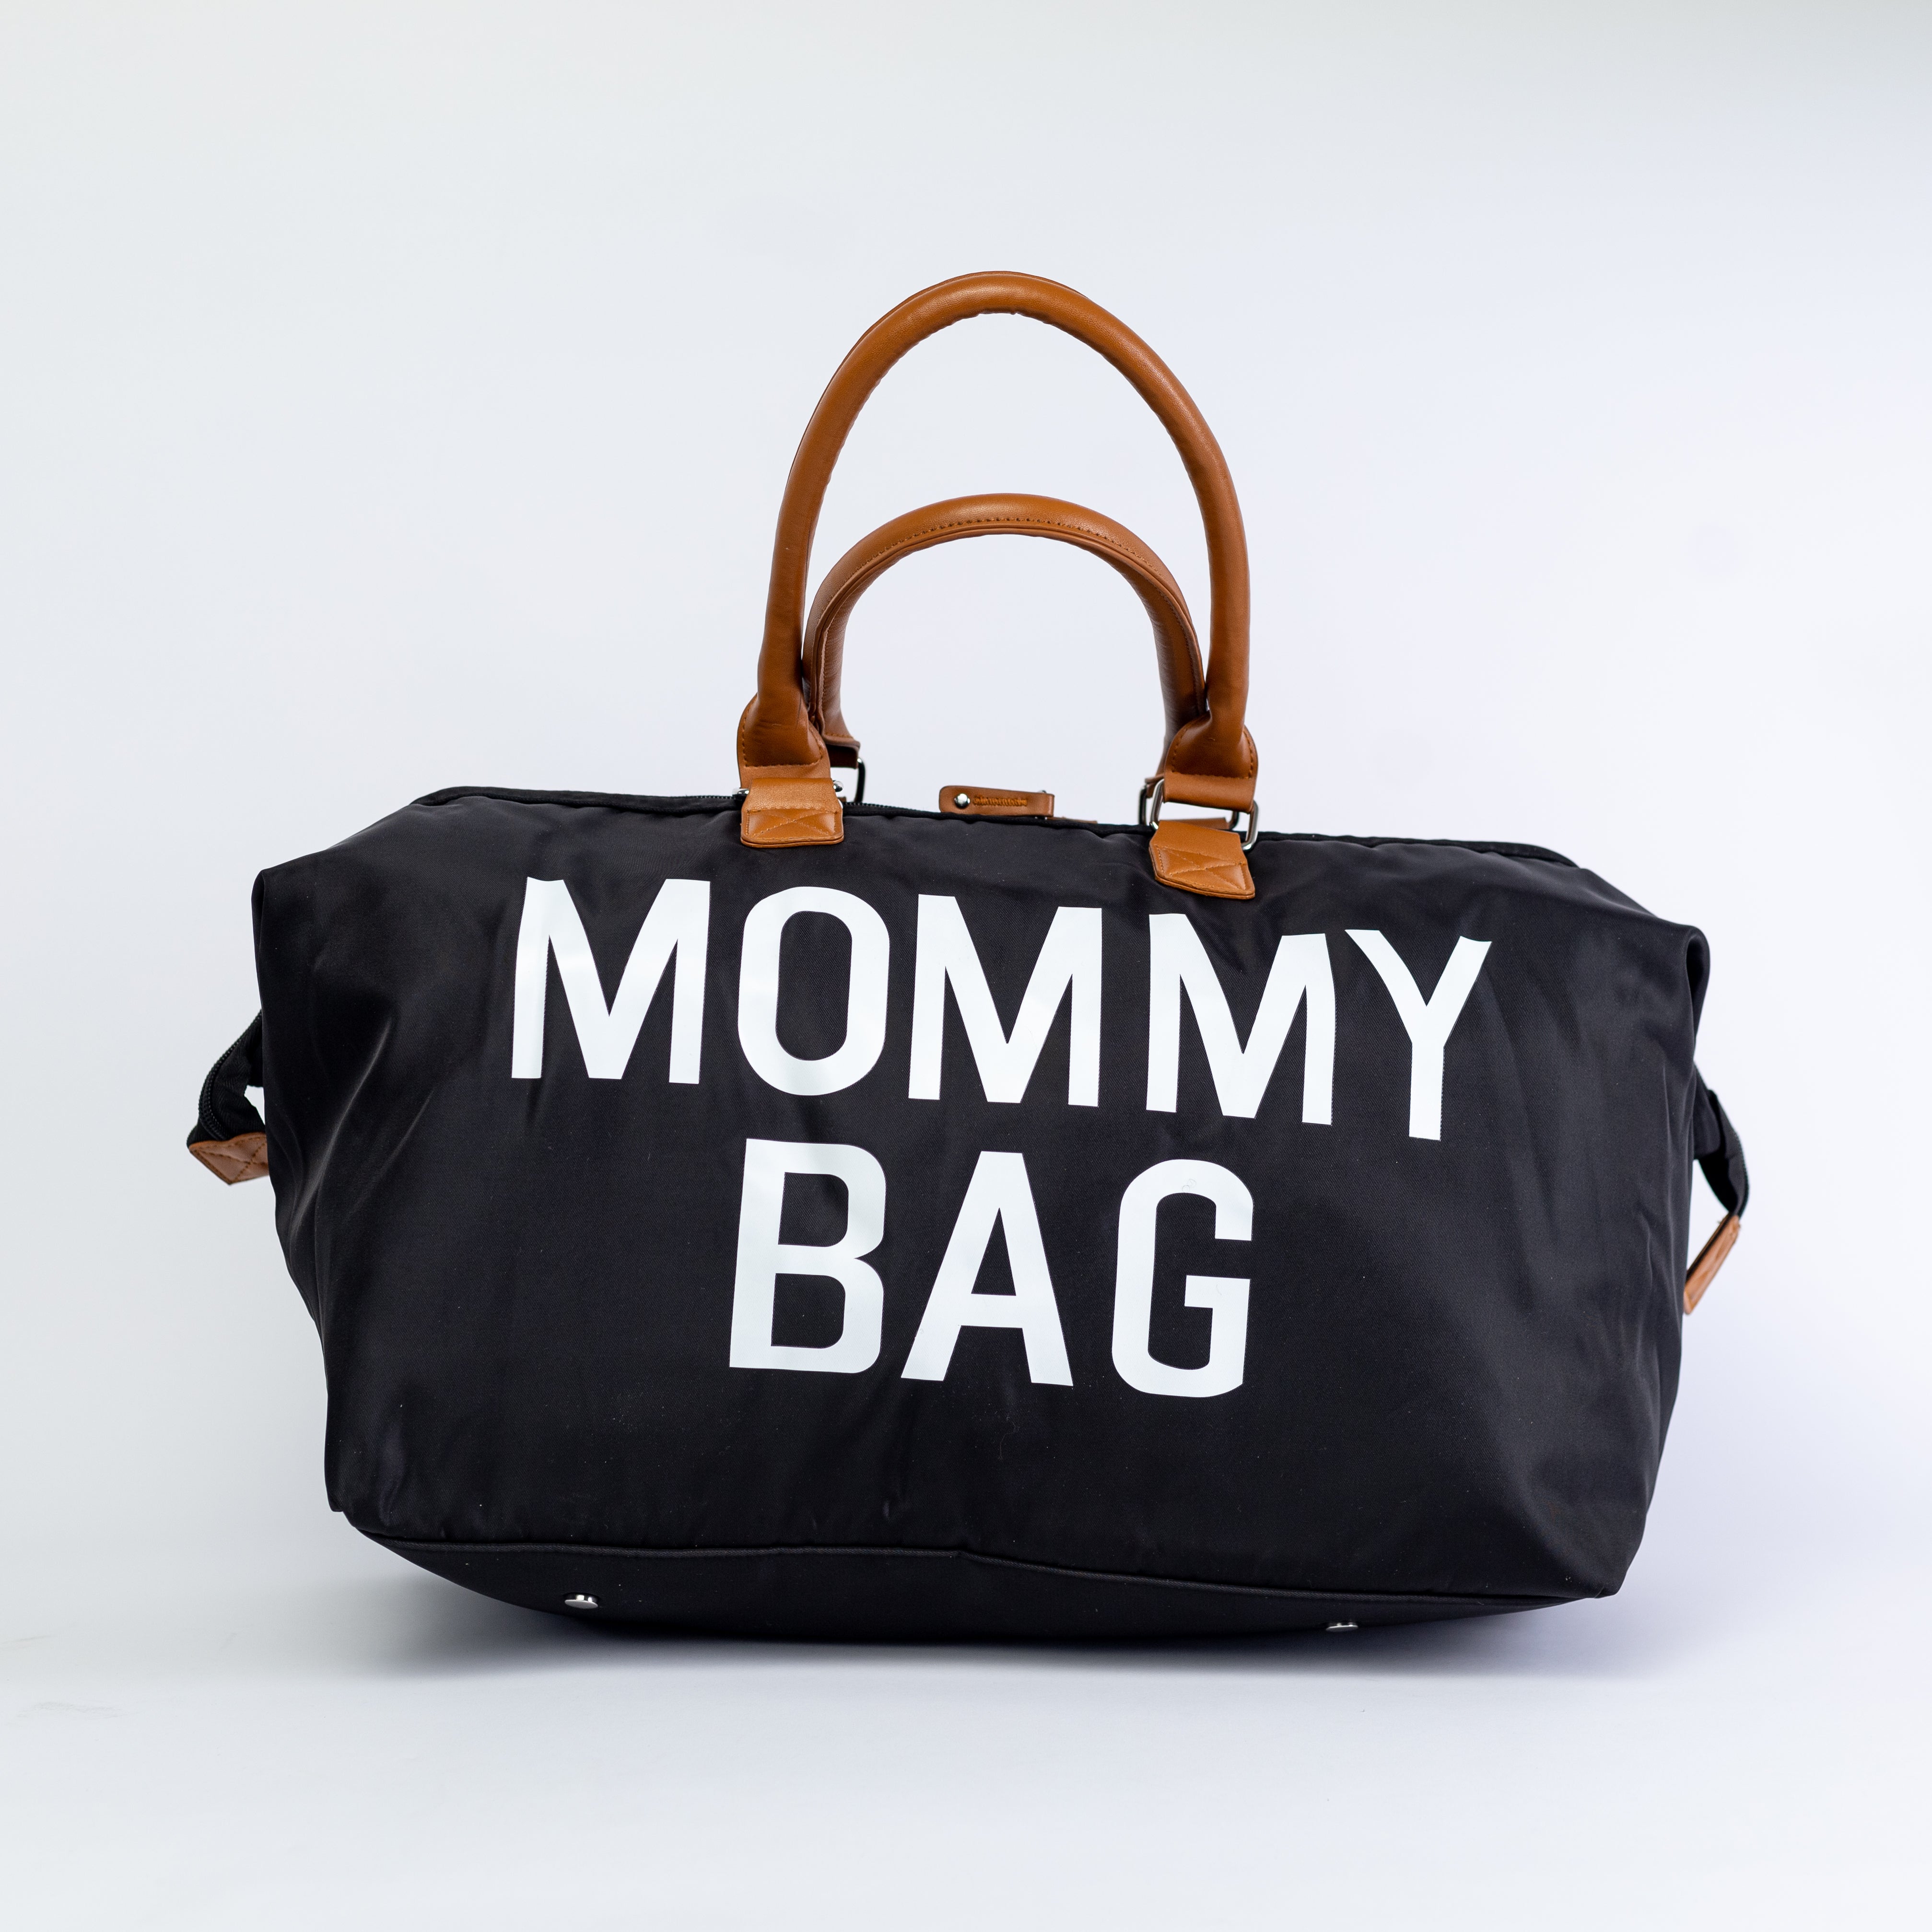 Pibi Mommy Tote Diaper Bag Set of 3 Black